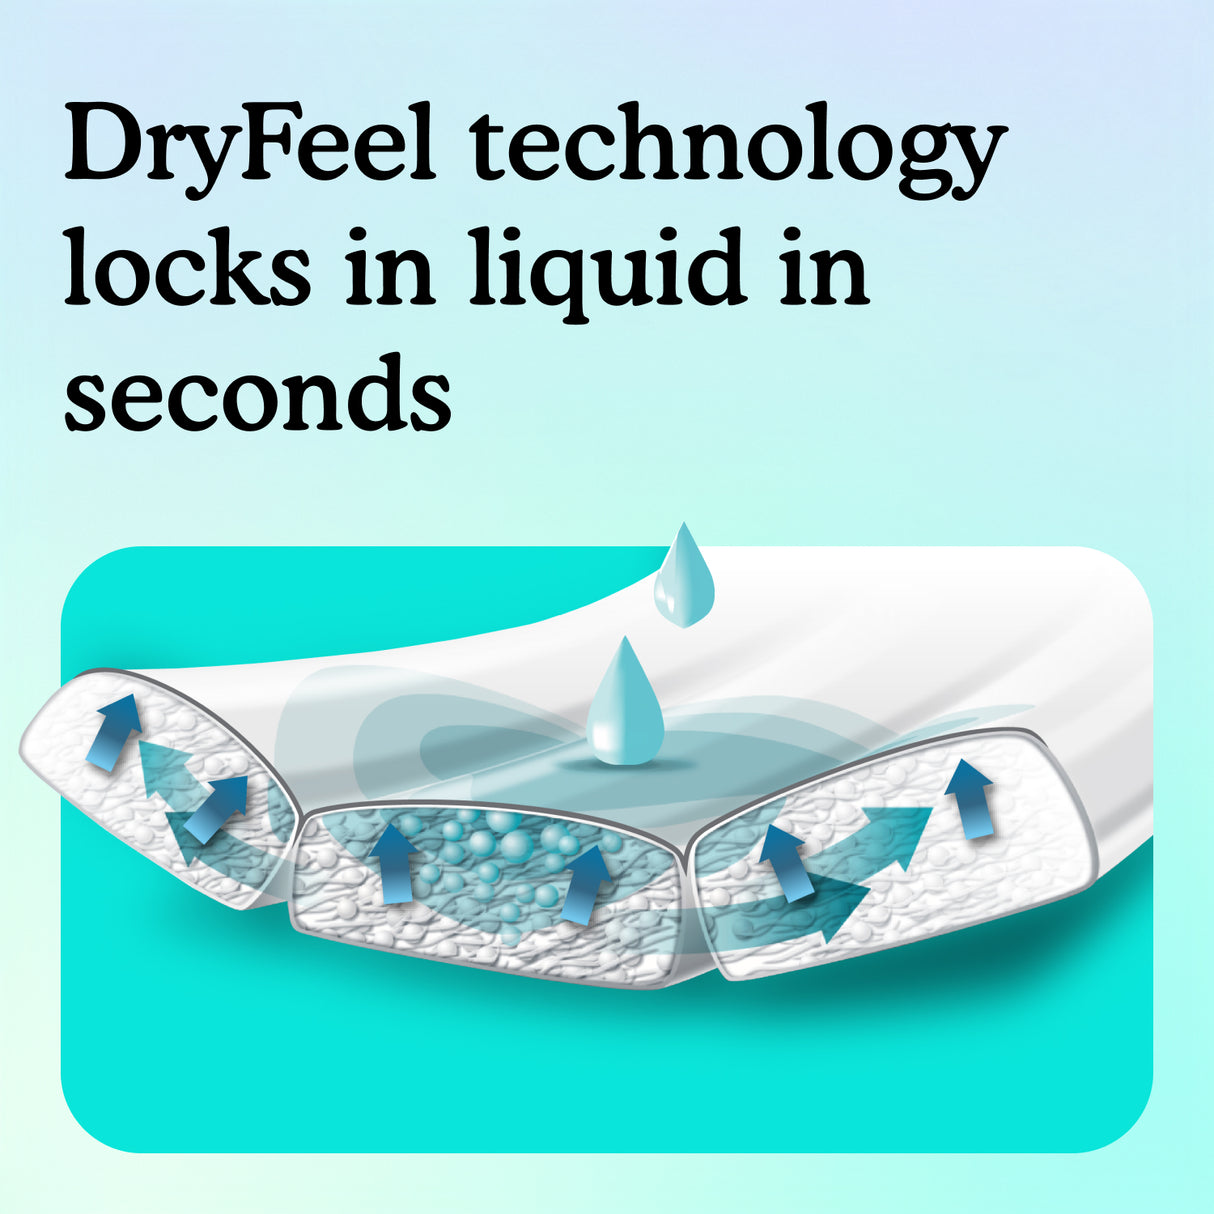 Dryfeel technology locks in liquid in seconds